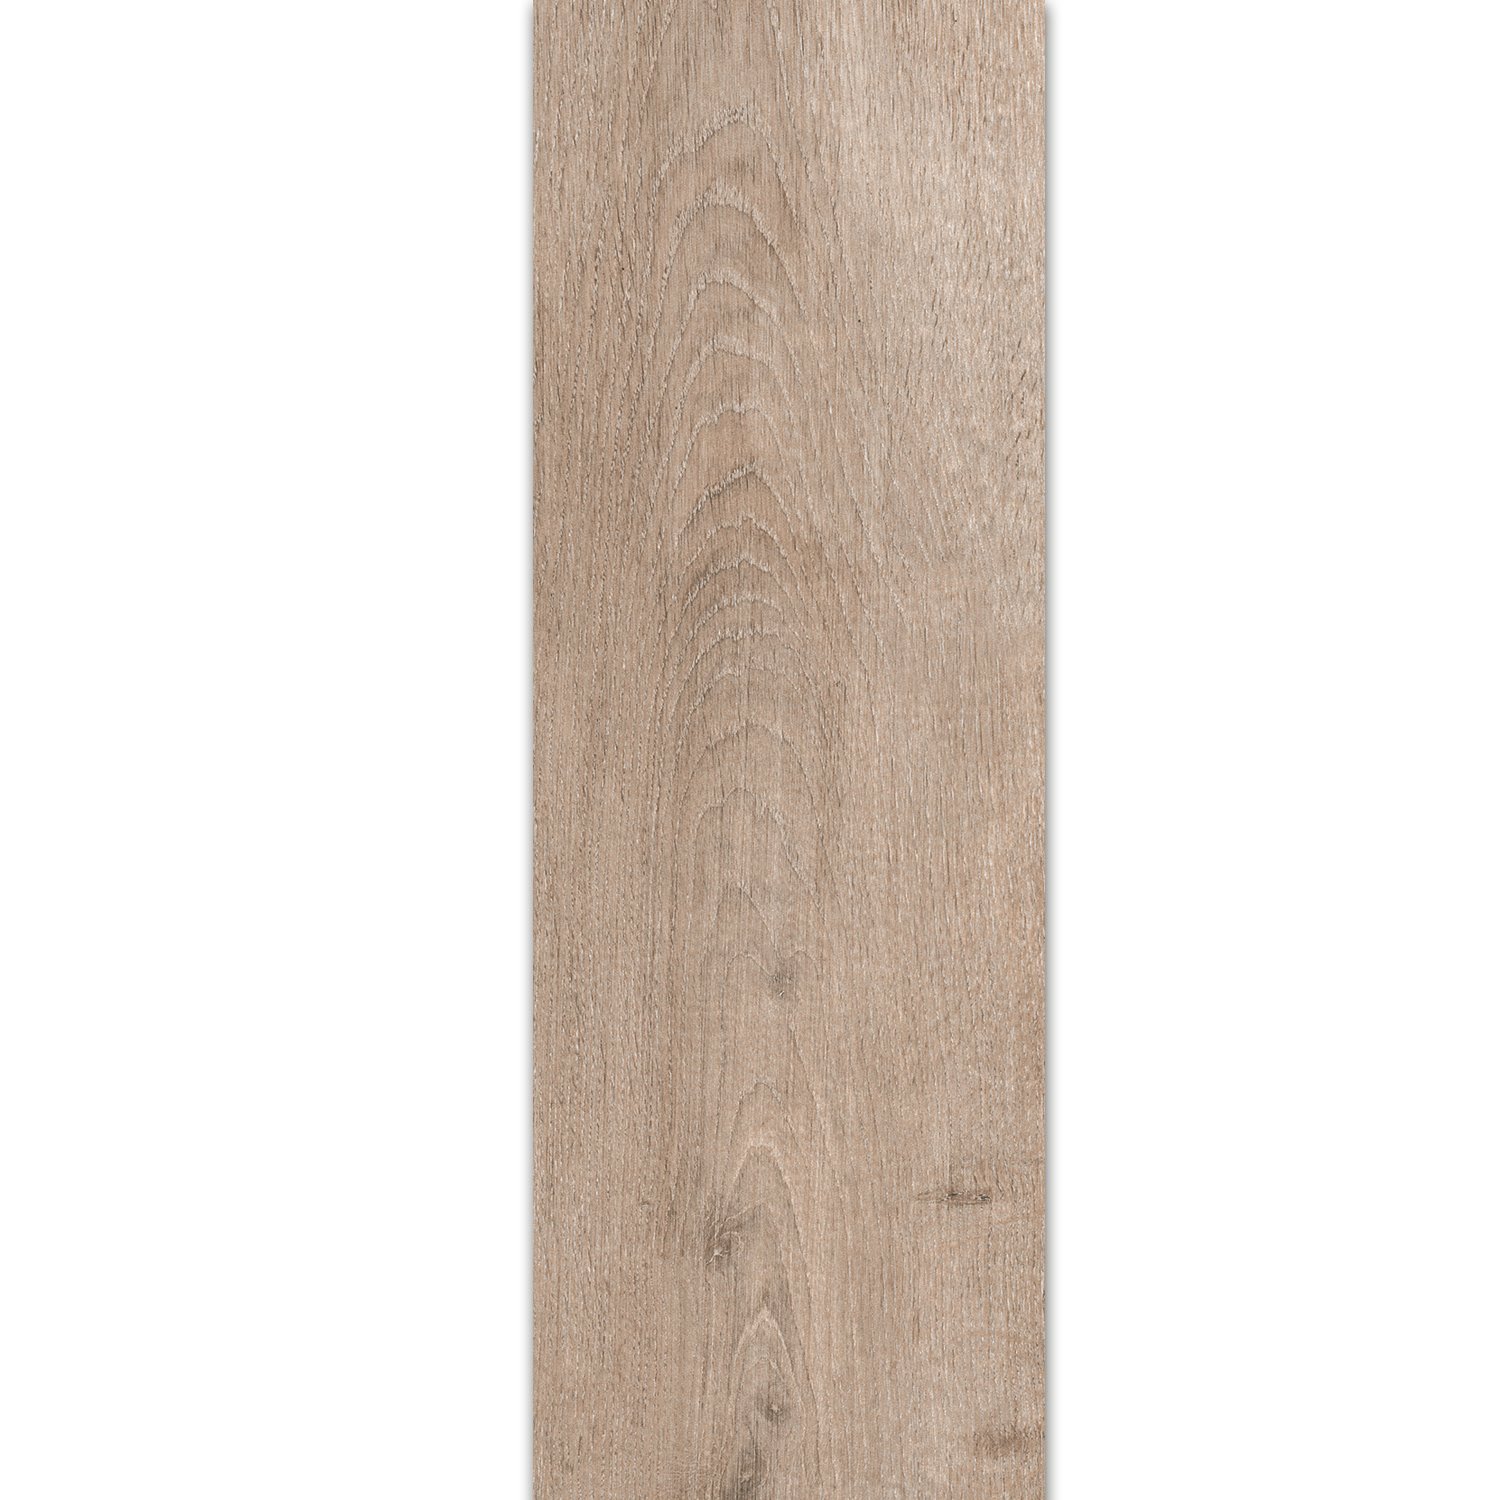 Floor Tiles Wood Optic Riverside Latte 20x120cm